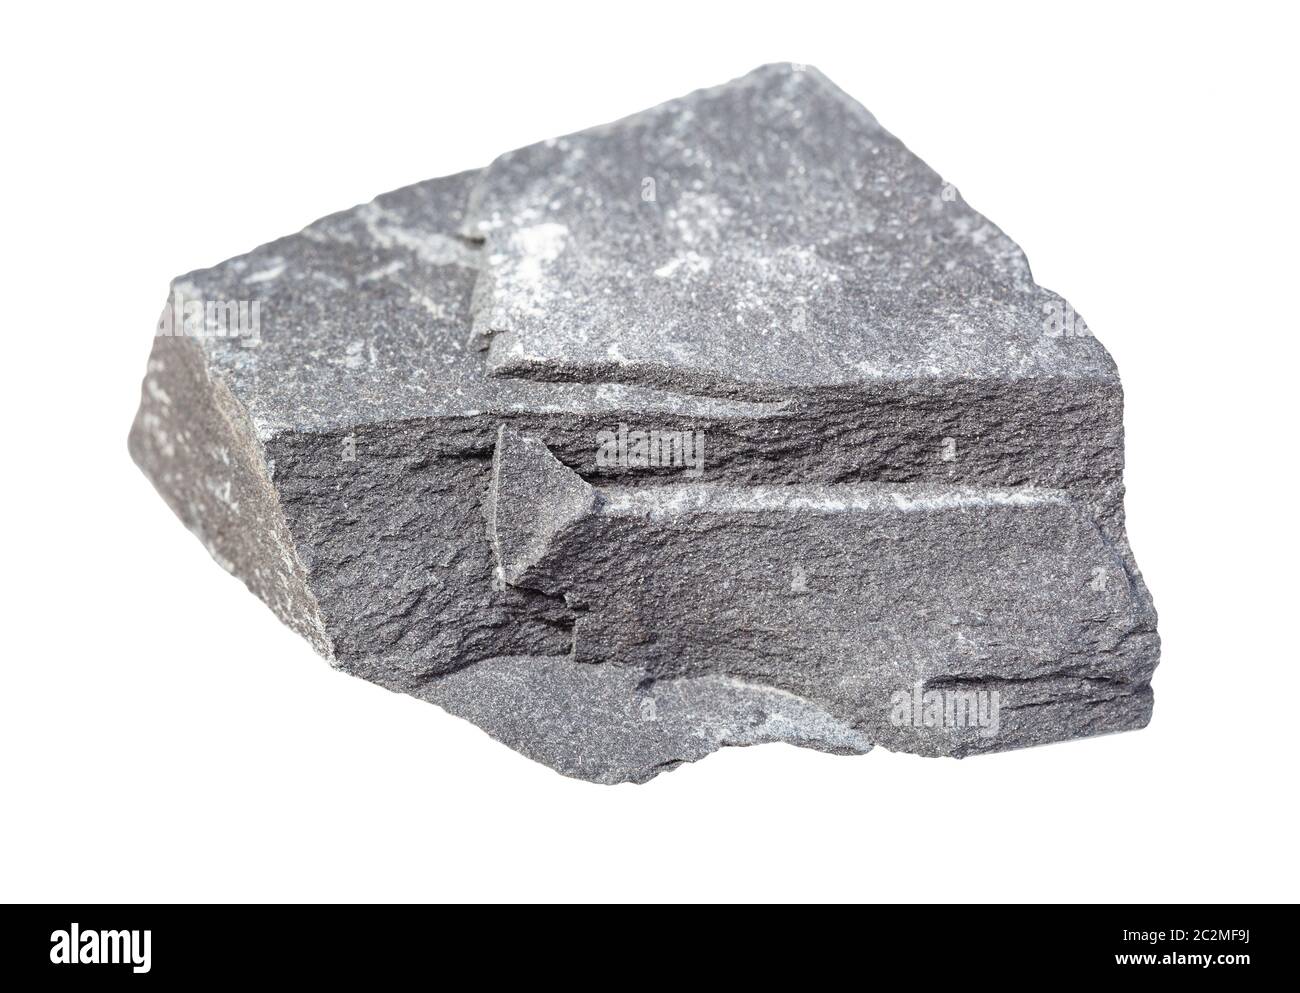 Primo piano del campione di minerale naturale proveniente dalla raccolta geologica - roccia argillite grigio ruvida isolata su sfondo bianco Foto Stock